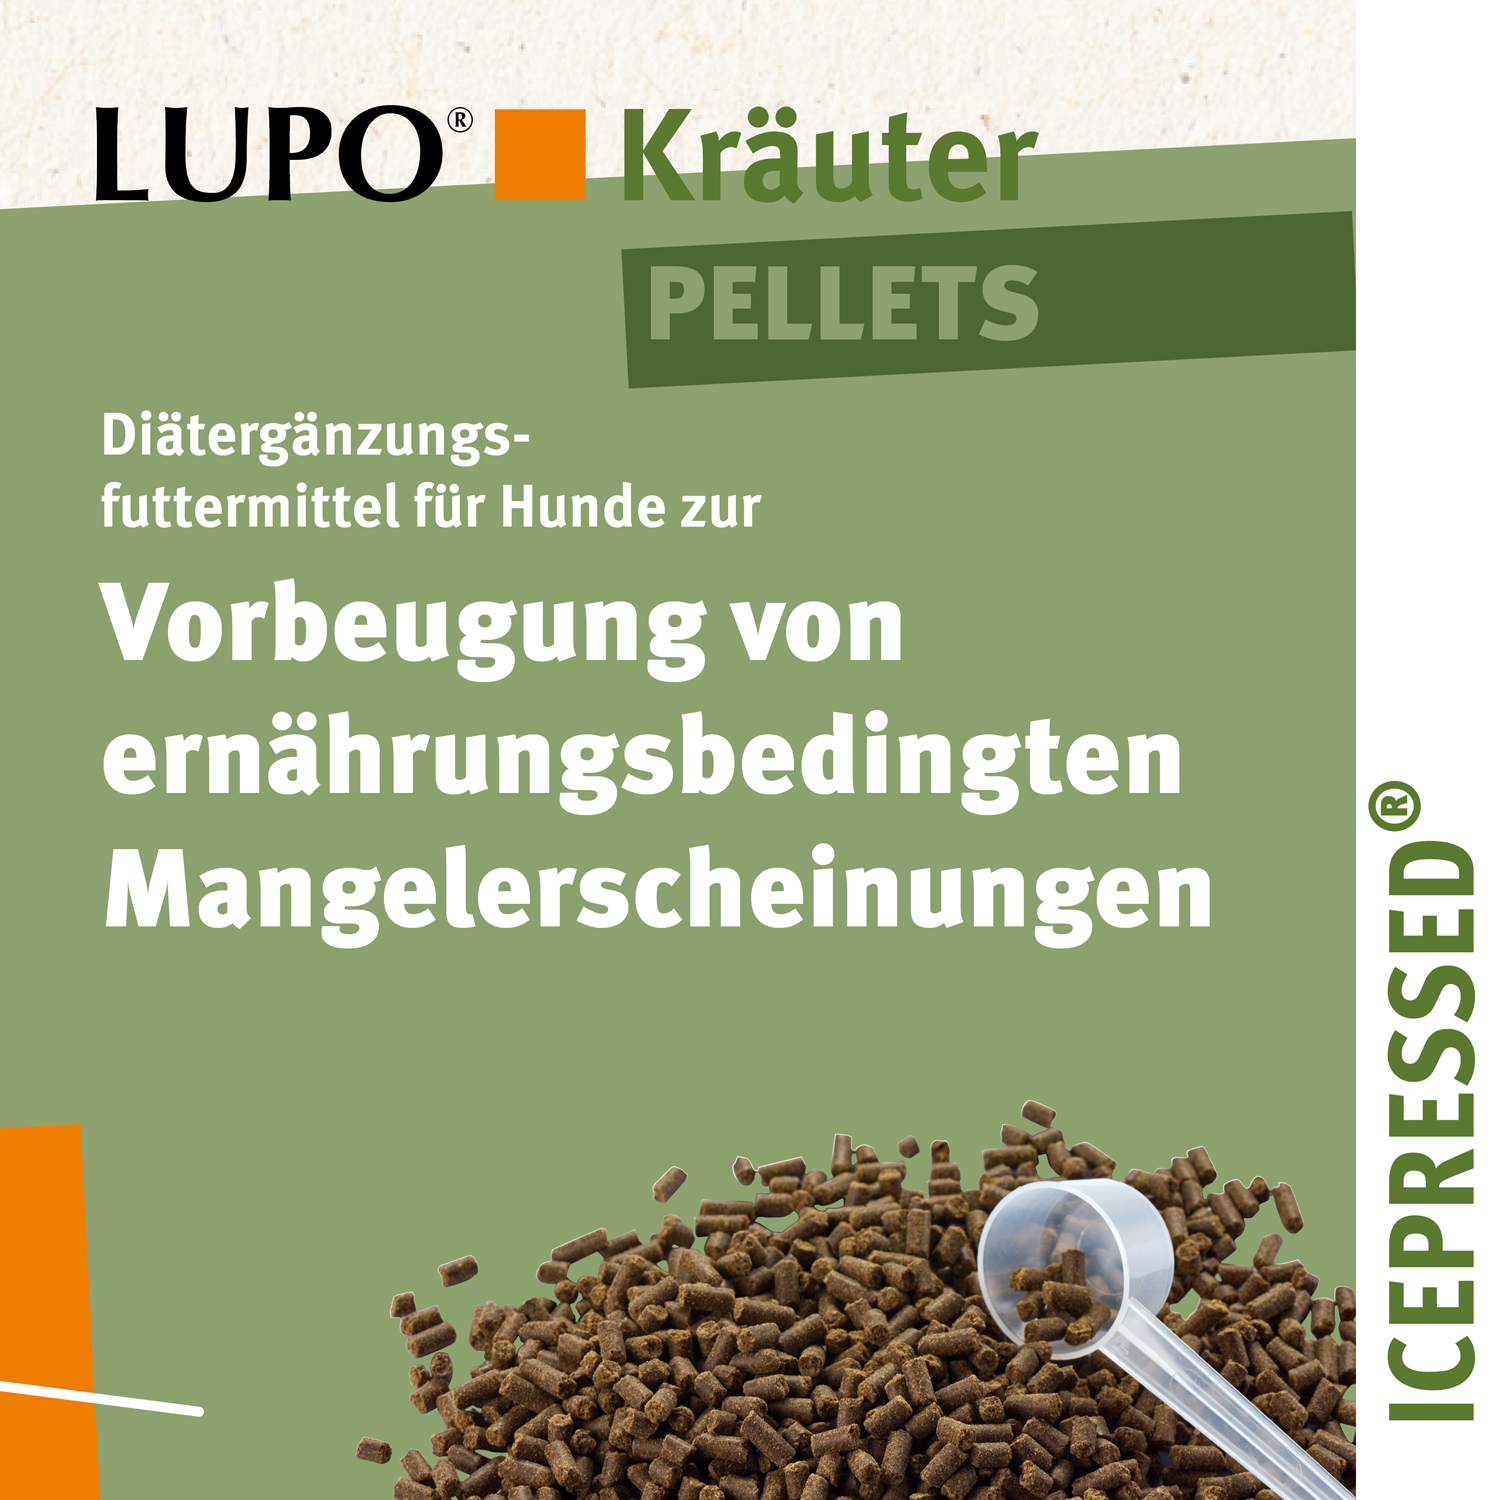 LUPO Kräuter Pellets 375 g